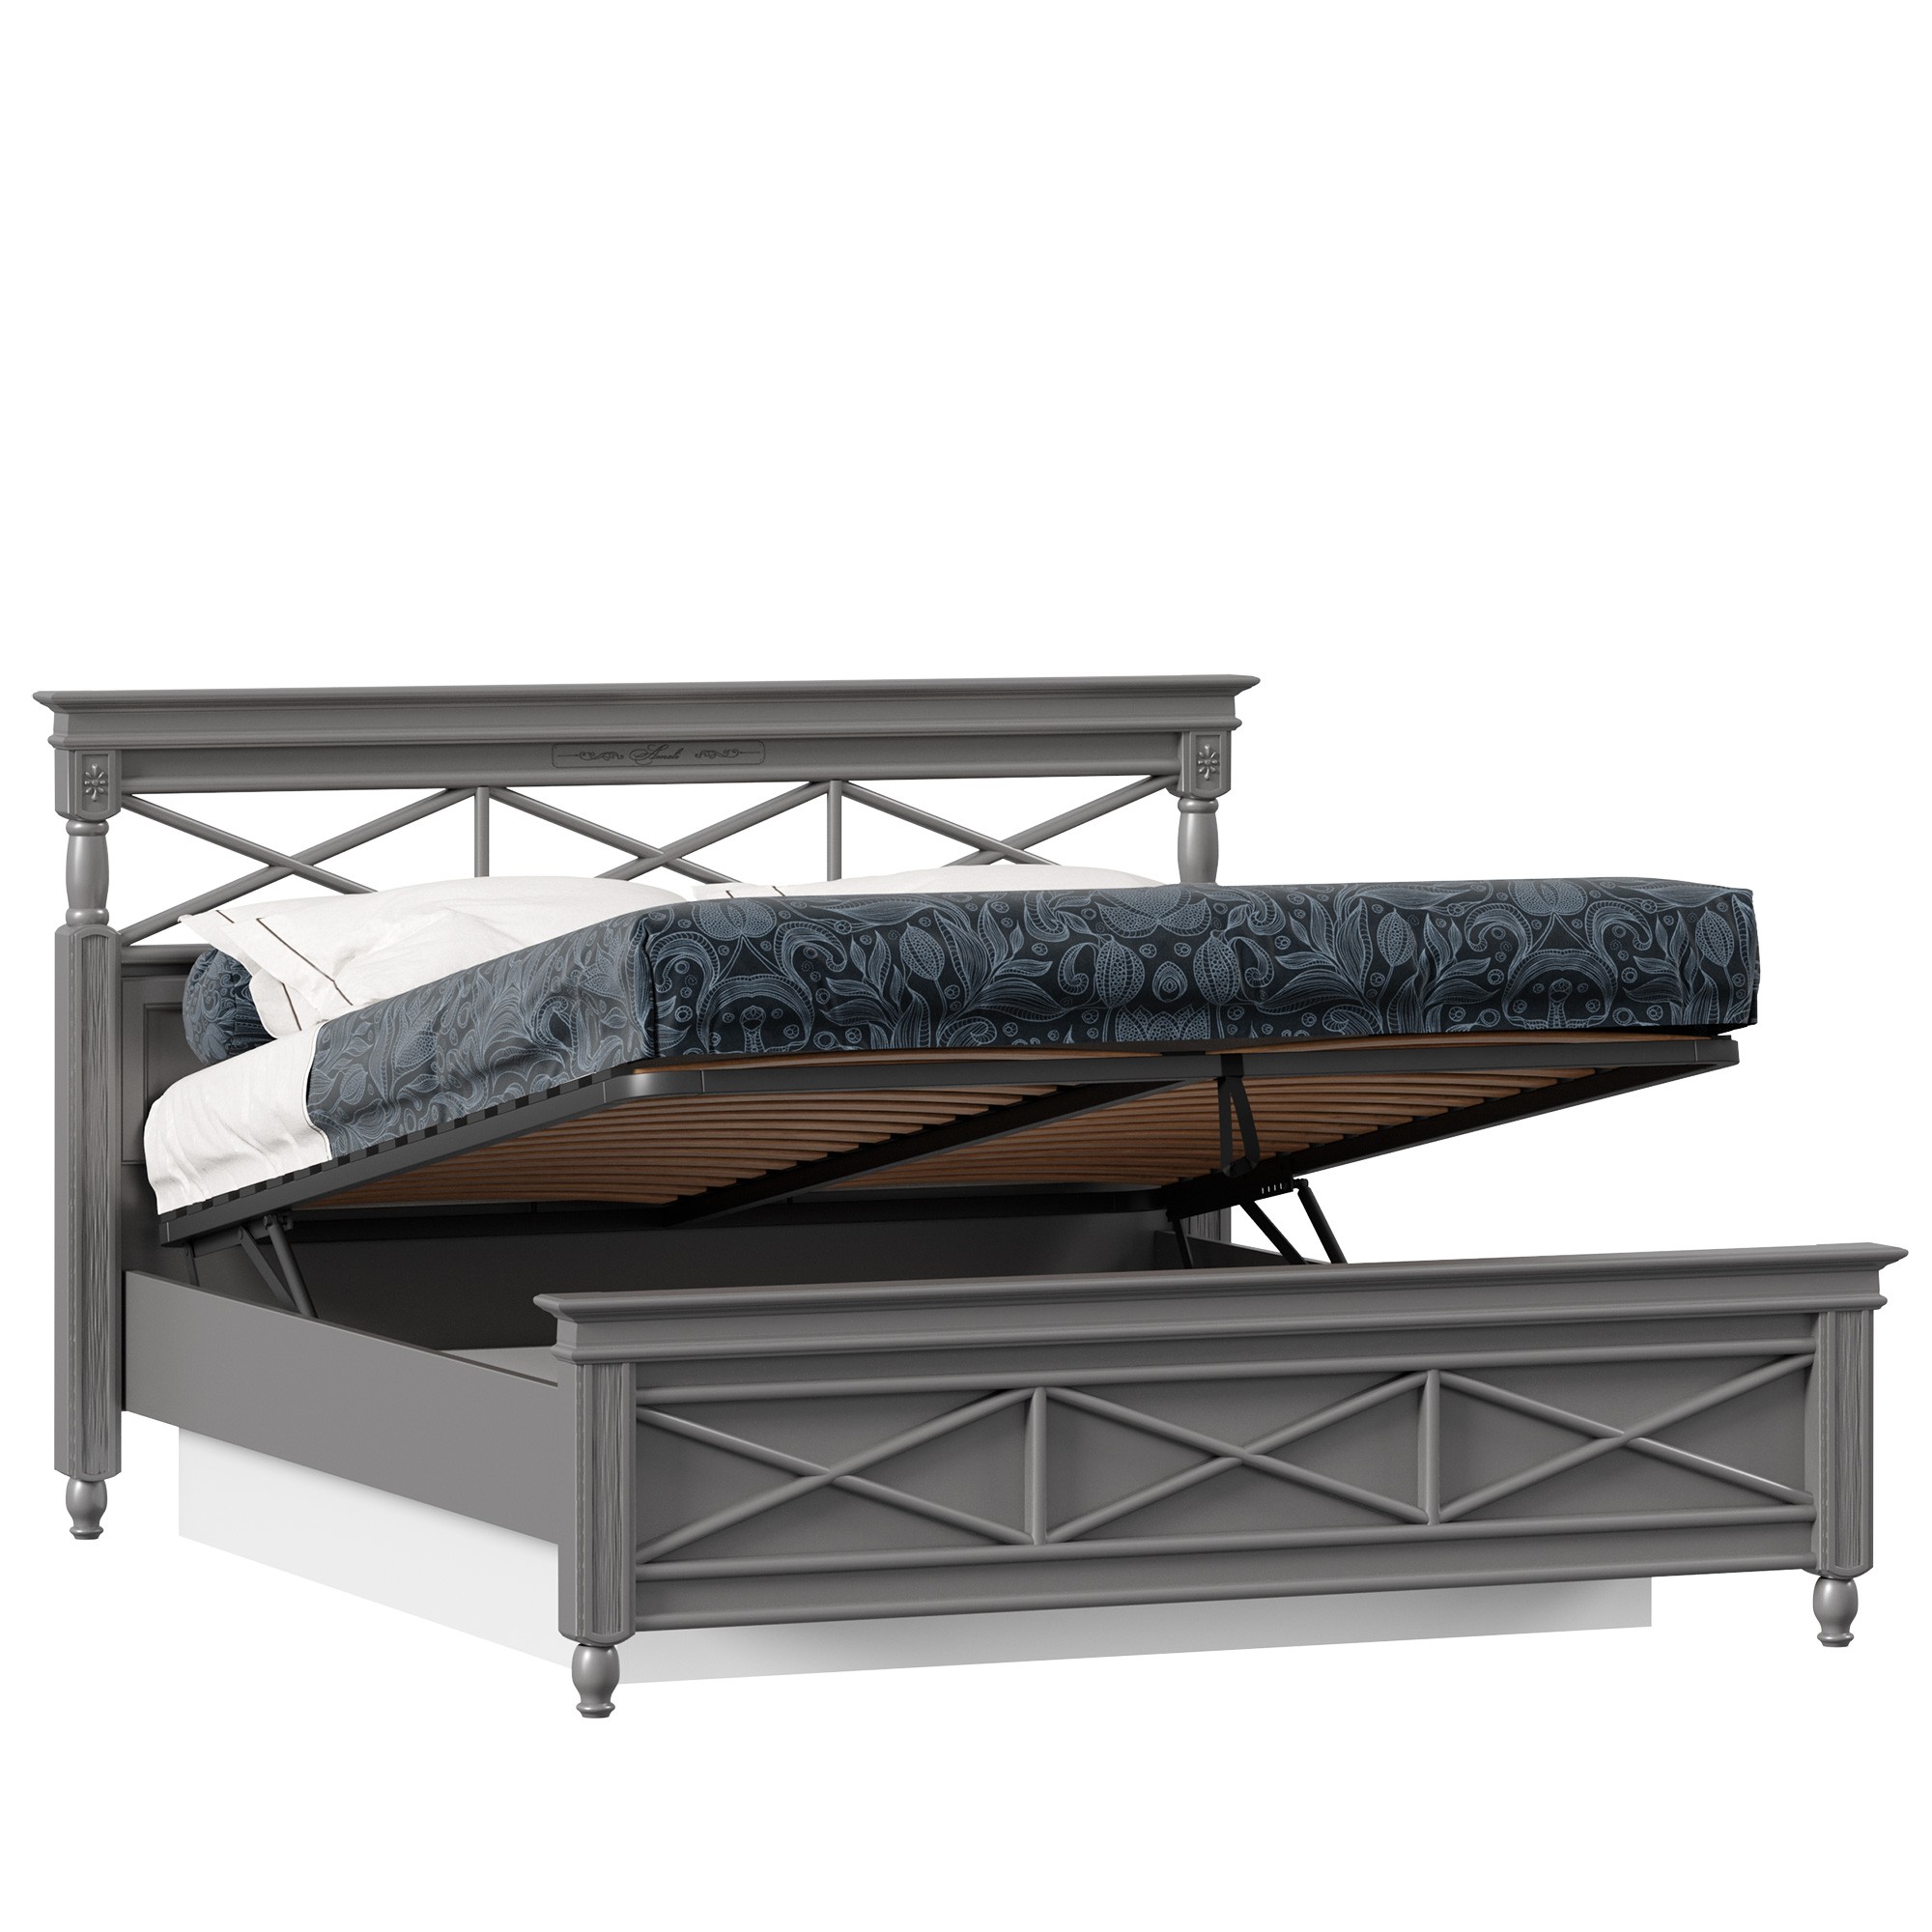 Двуспальные кровати 160х200 с подъемным механизмом